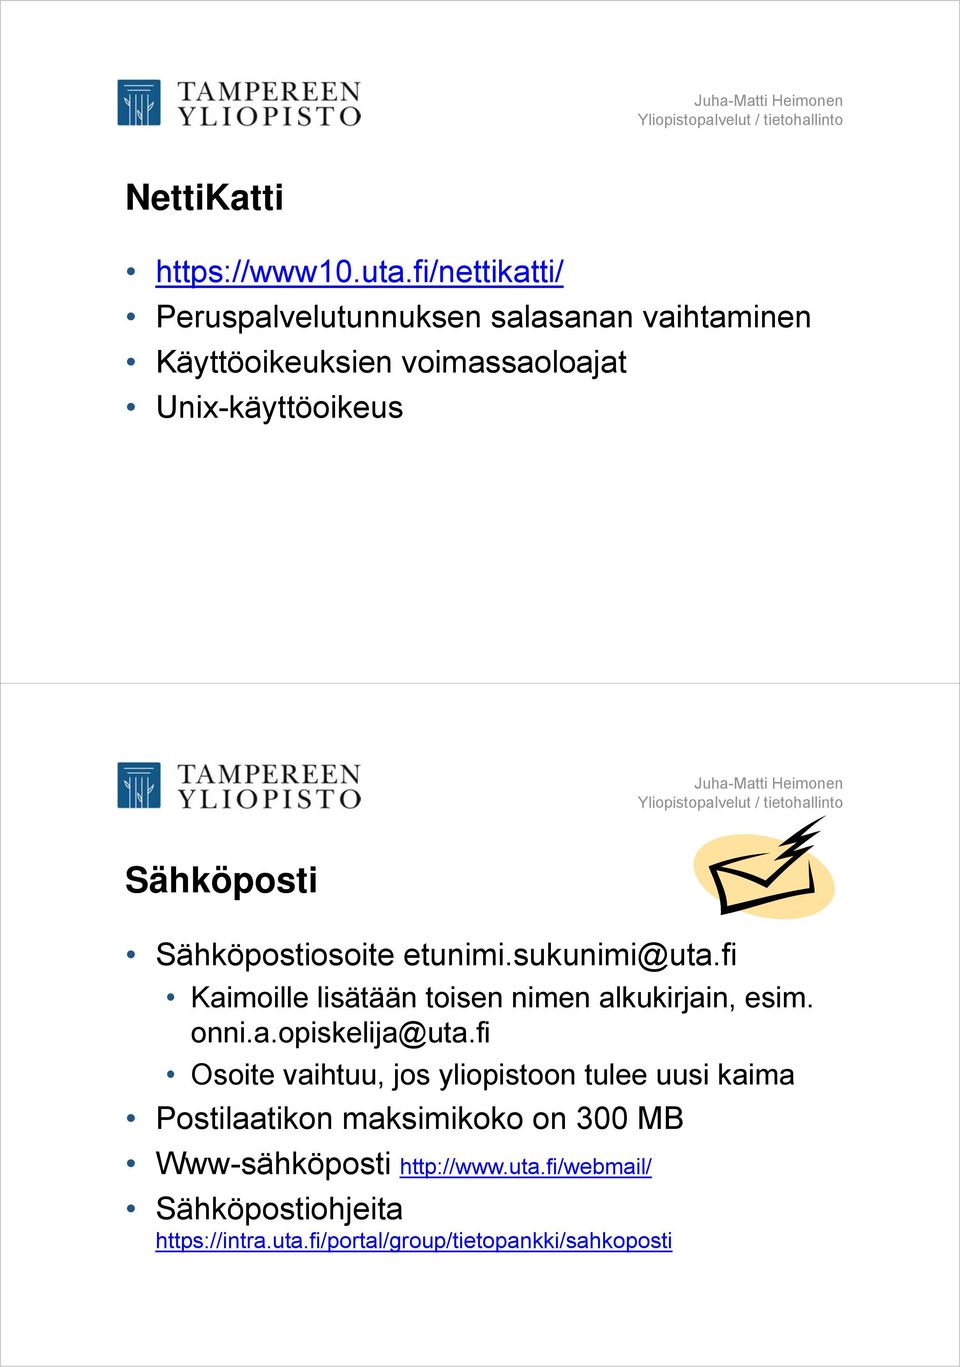 Sähköposti Sähköpostiosoite etunimi.sukunimi@uta.fi Kaimoille lisätään toisen nimen alkukirjain, esim. onni.a.opiskelija@uta.